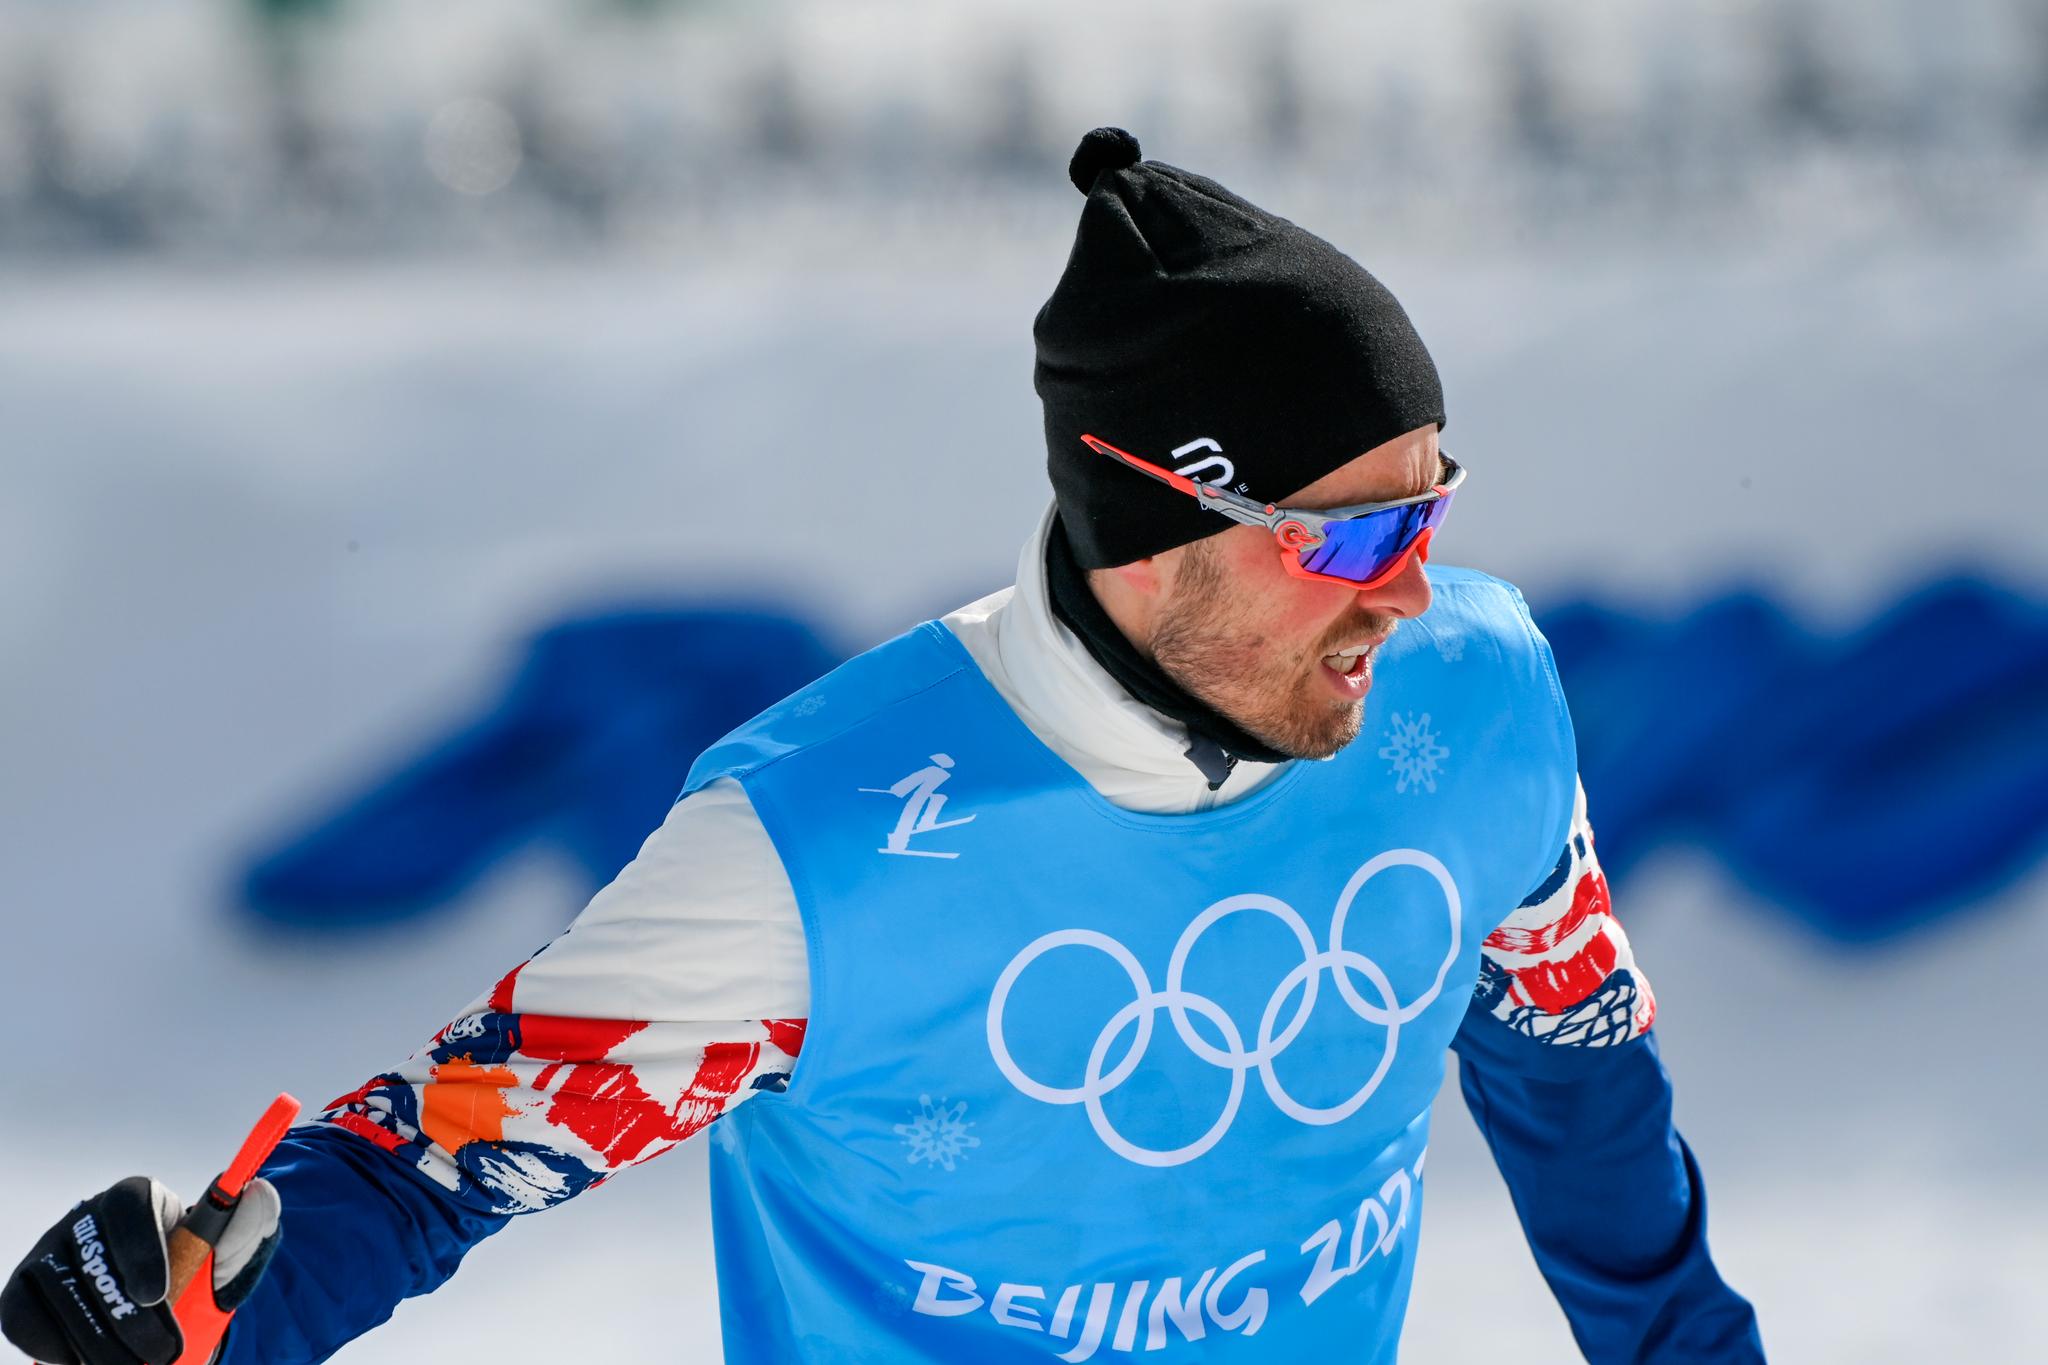 VRAKET: Emil Iversen måtte trene istedenfor å gå renn fredag.